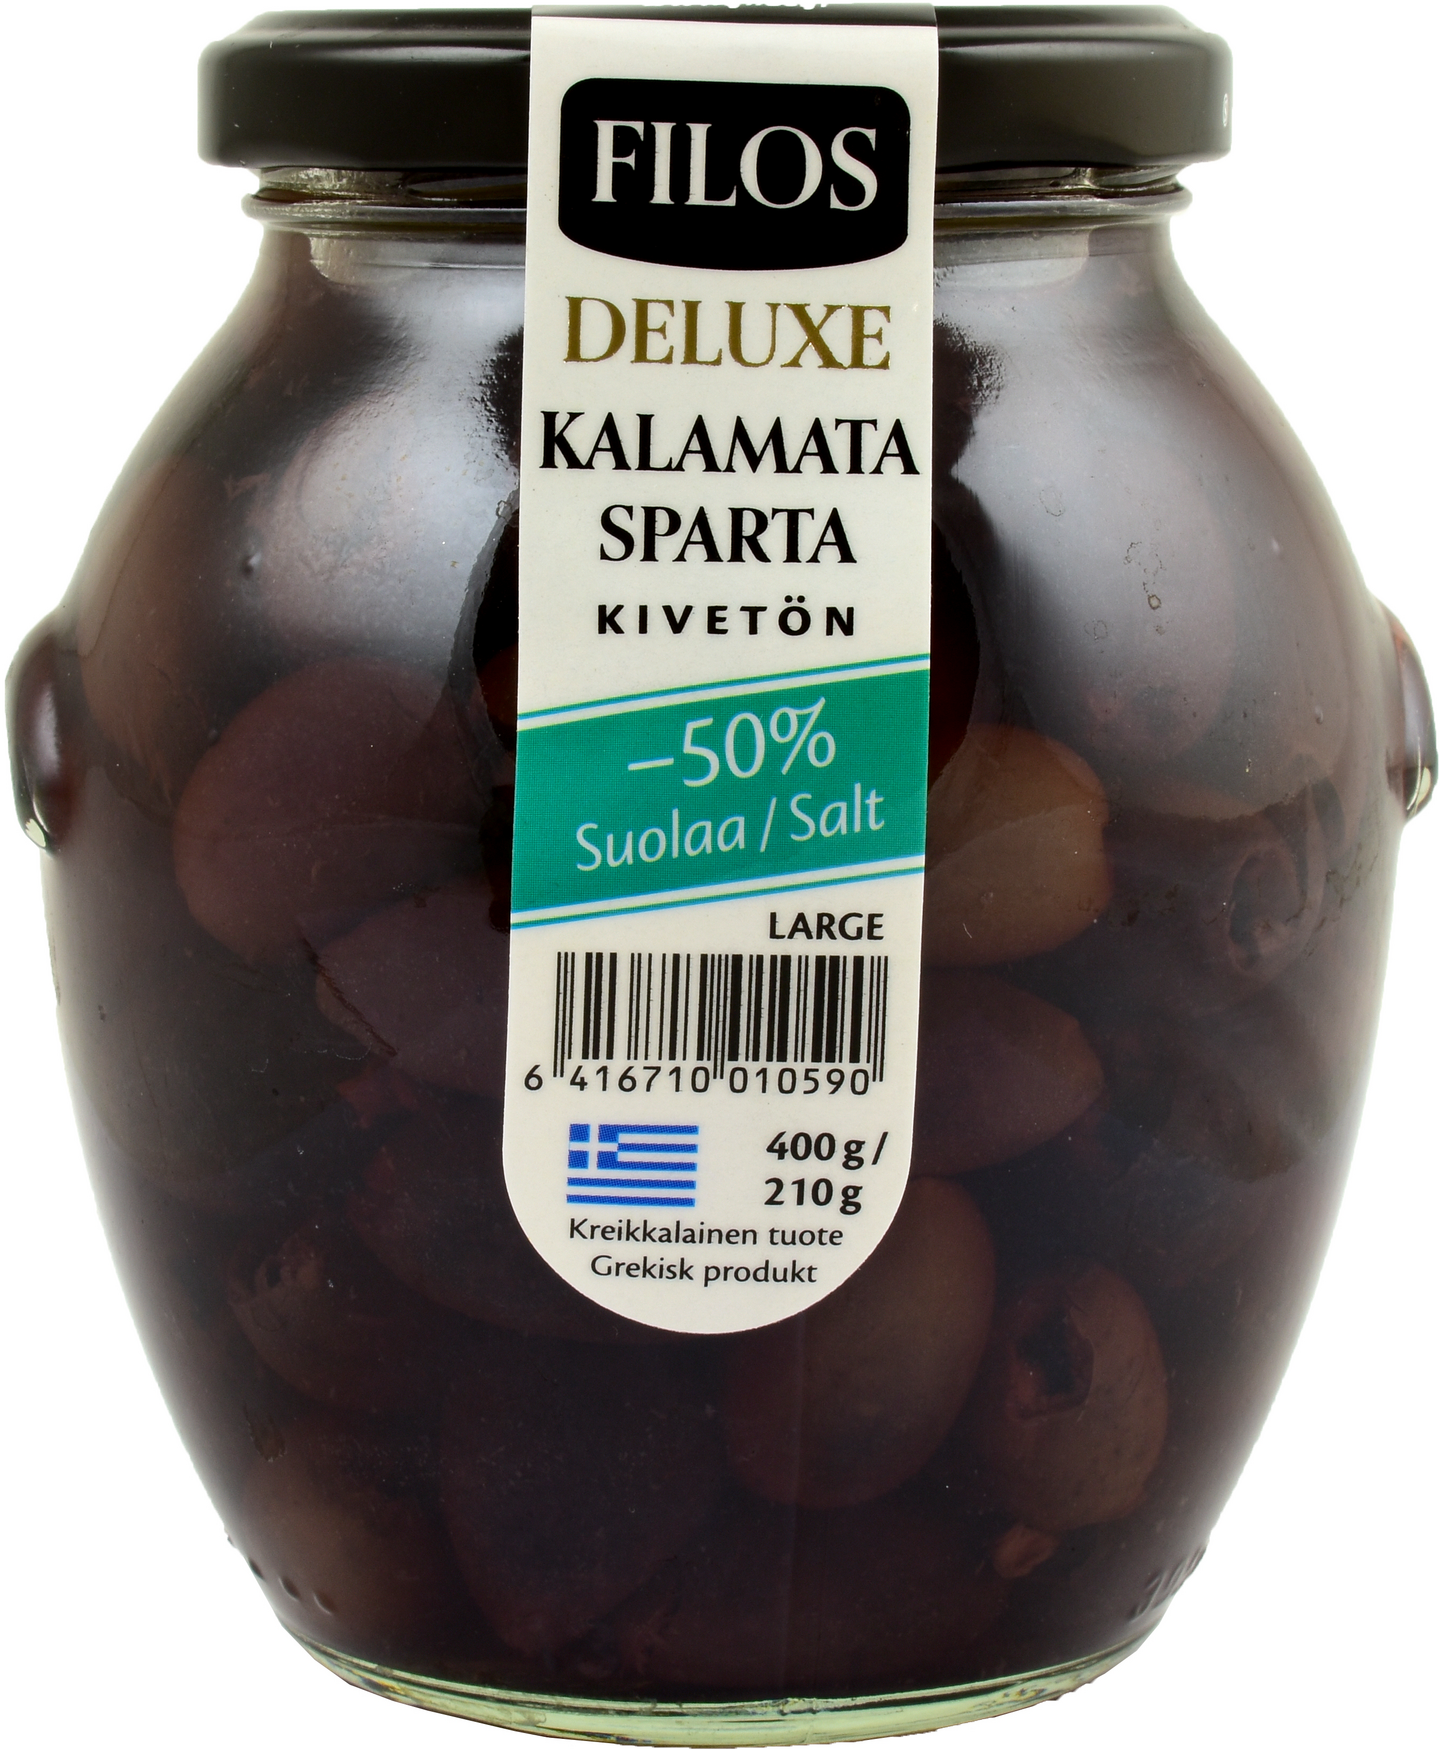 Filos Deluxe Kalamata-oliivi kivetön Sparta Large, -50% suolaa 400g/210g